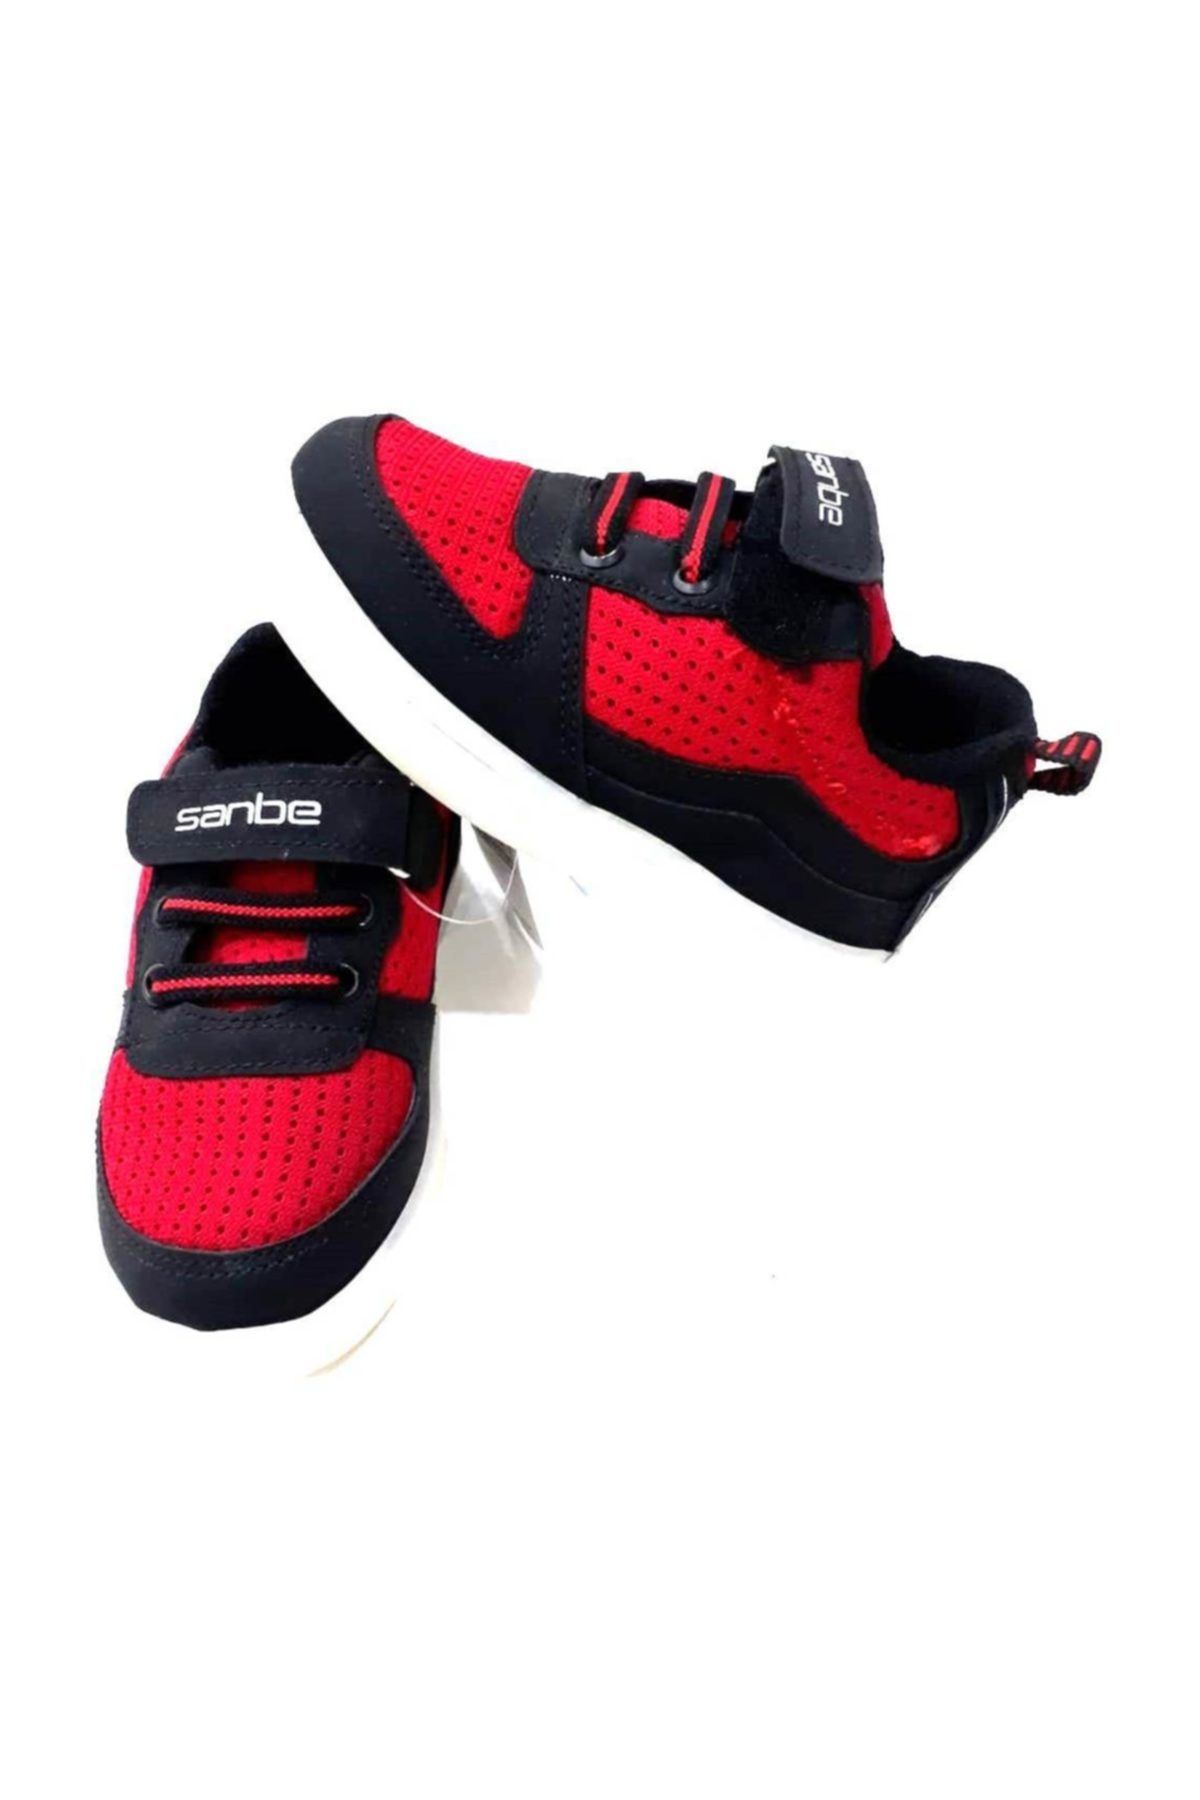 Sanbe Led Işıklı Spor Ayakkabı Kırmızı